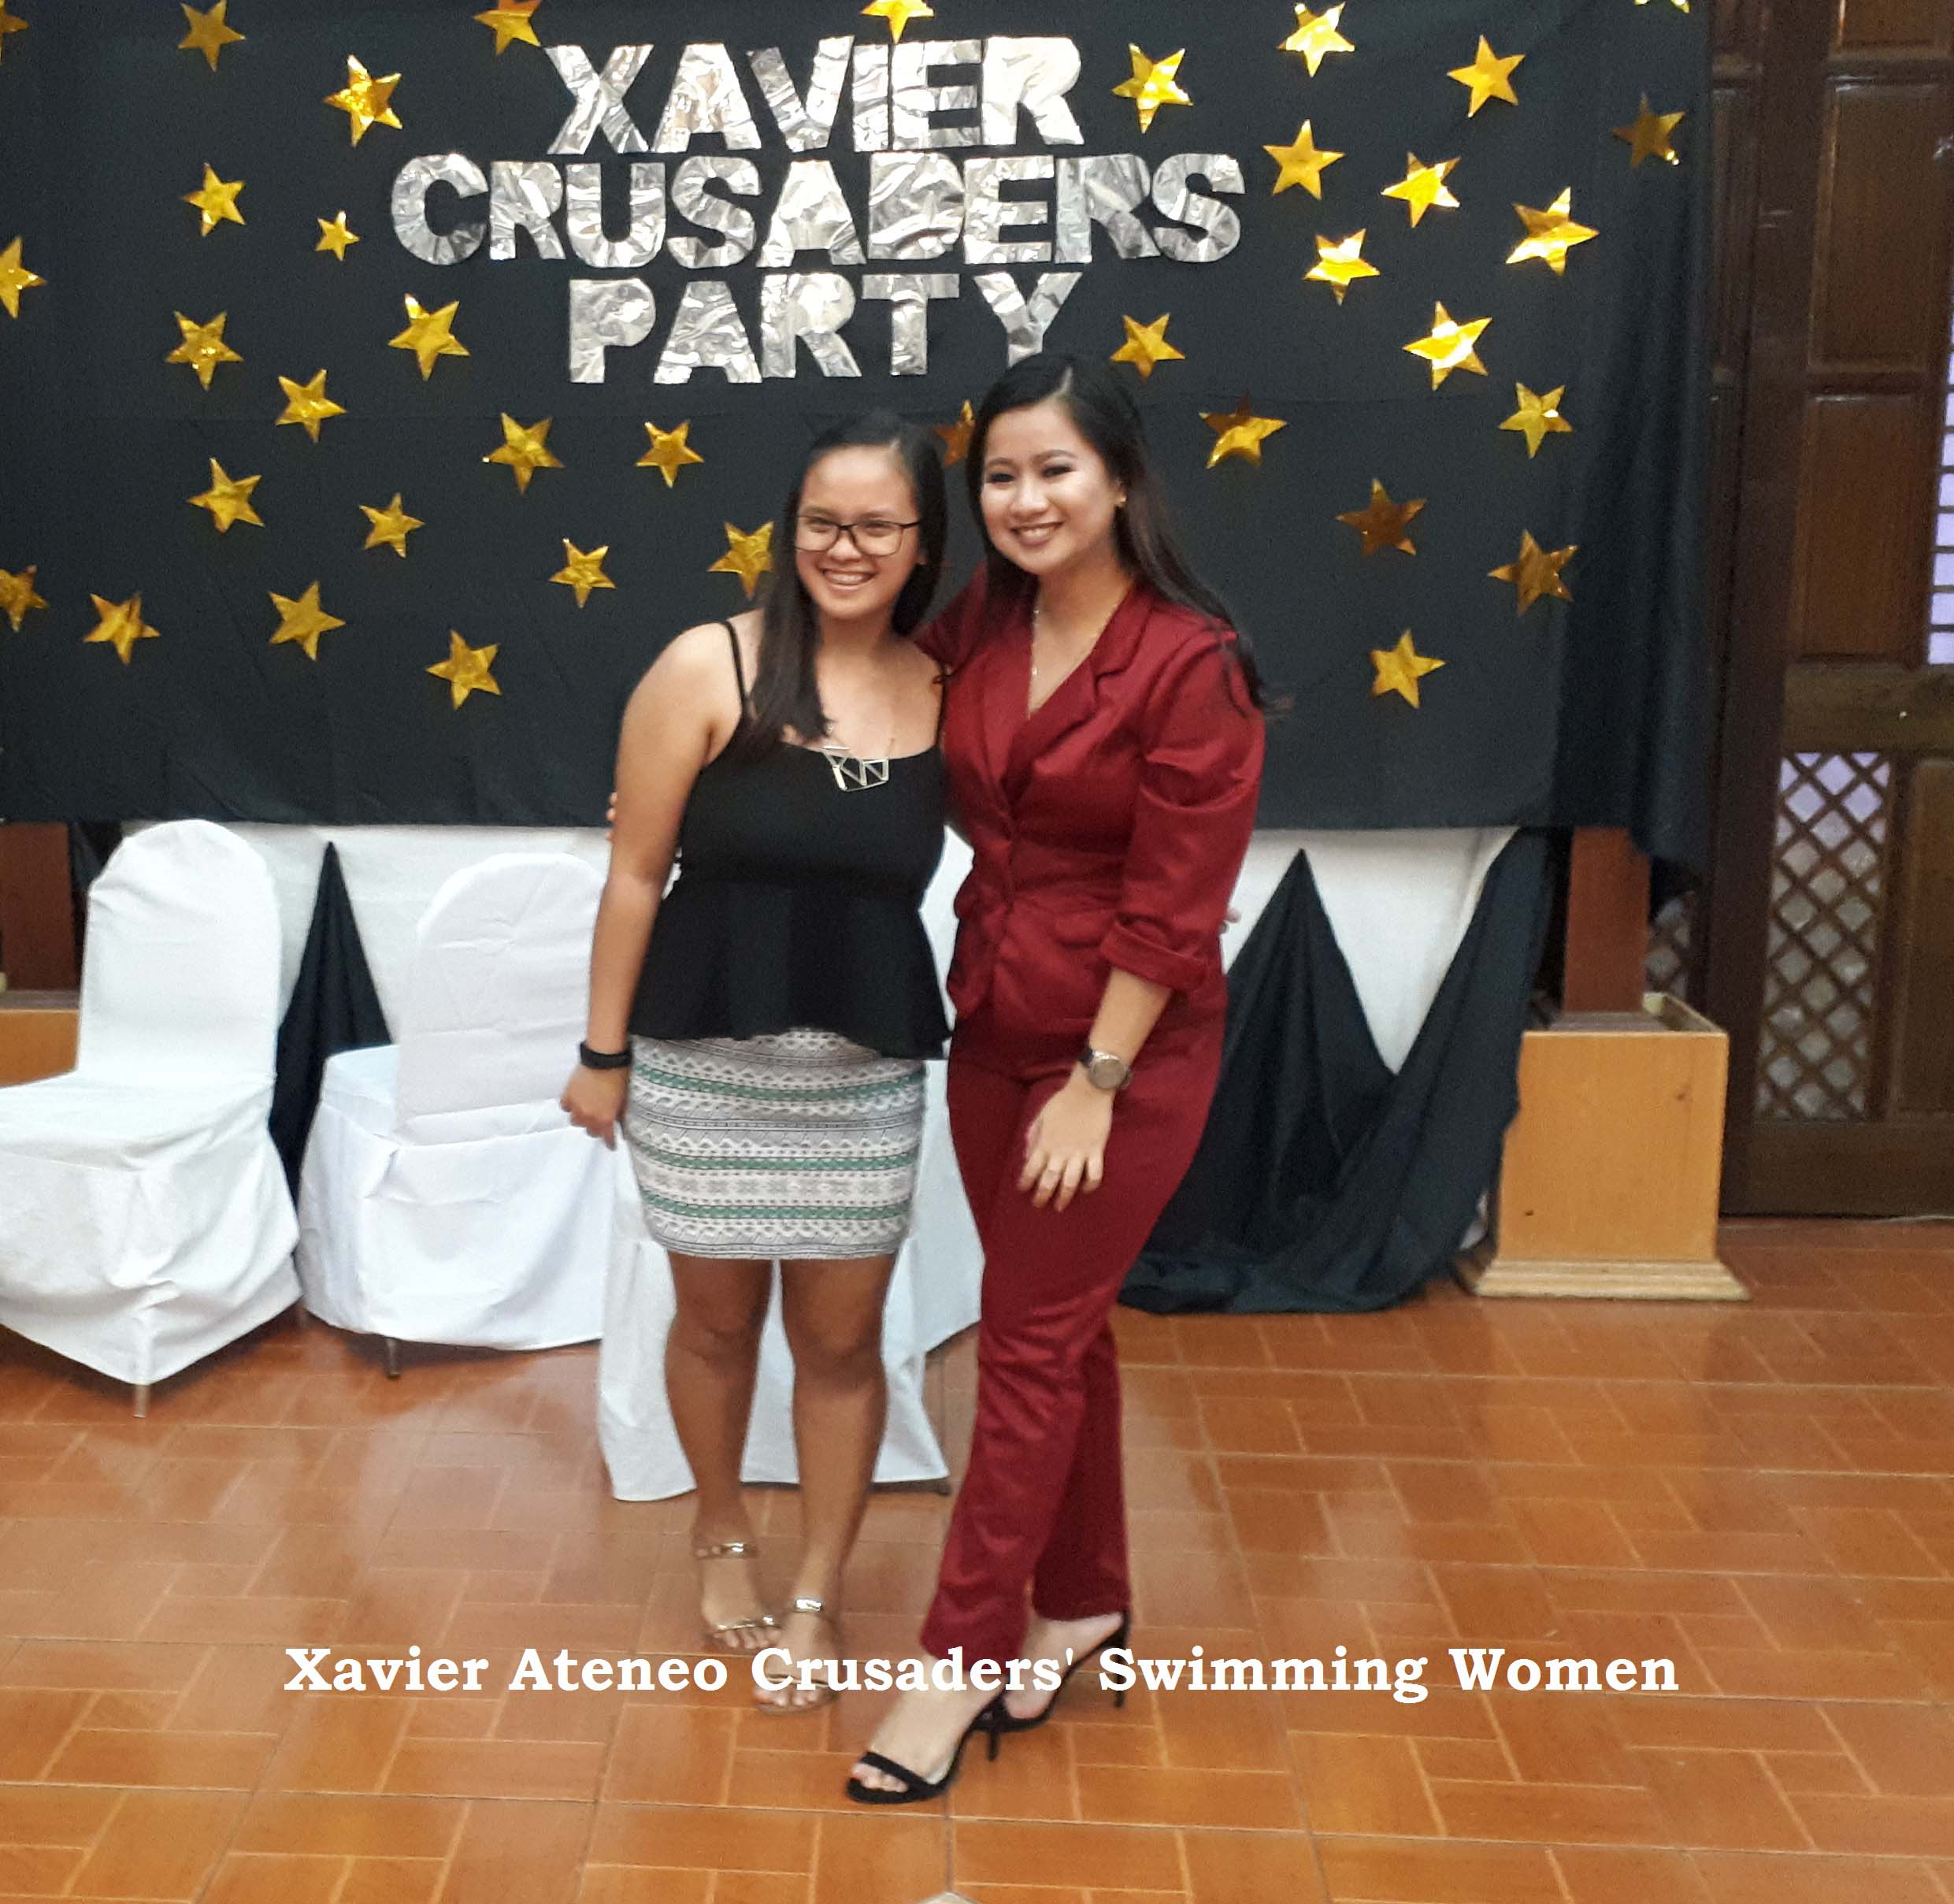 07 Xavier Ateneo Crusaders Swimming Women